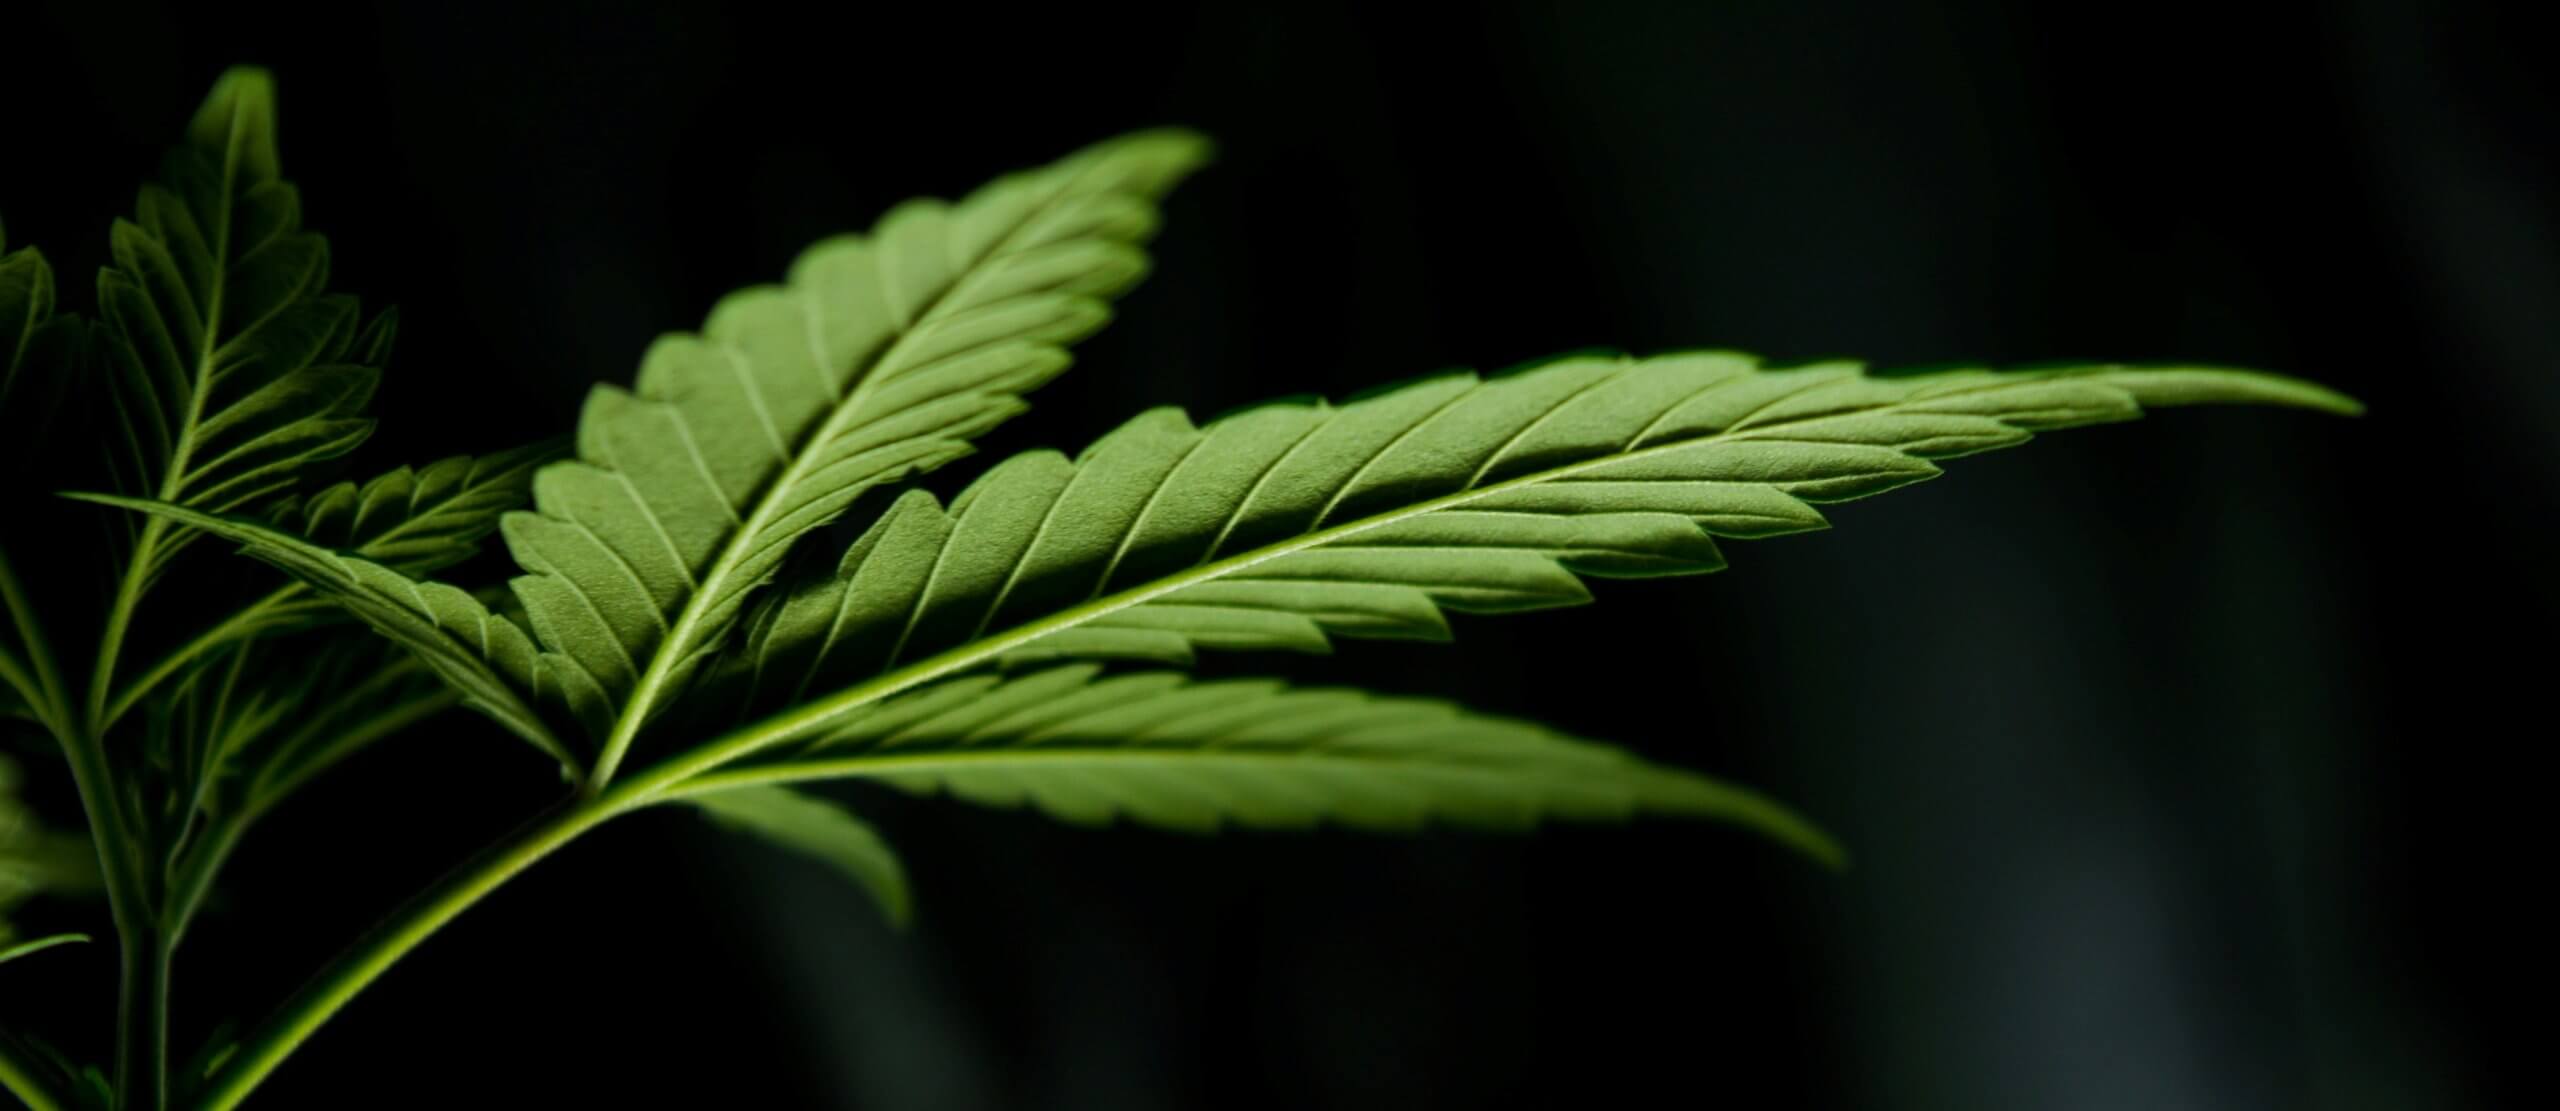 Скручиваются листья марихуаны темы для андроида конопля